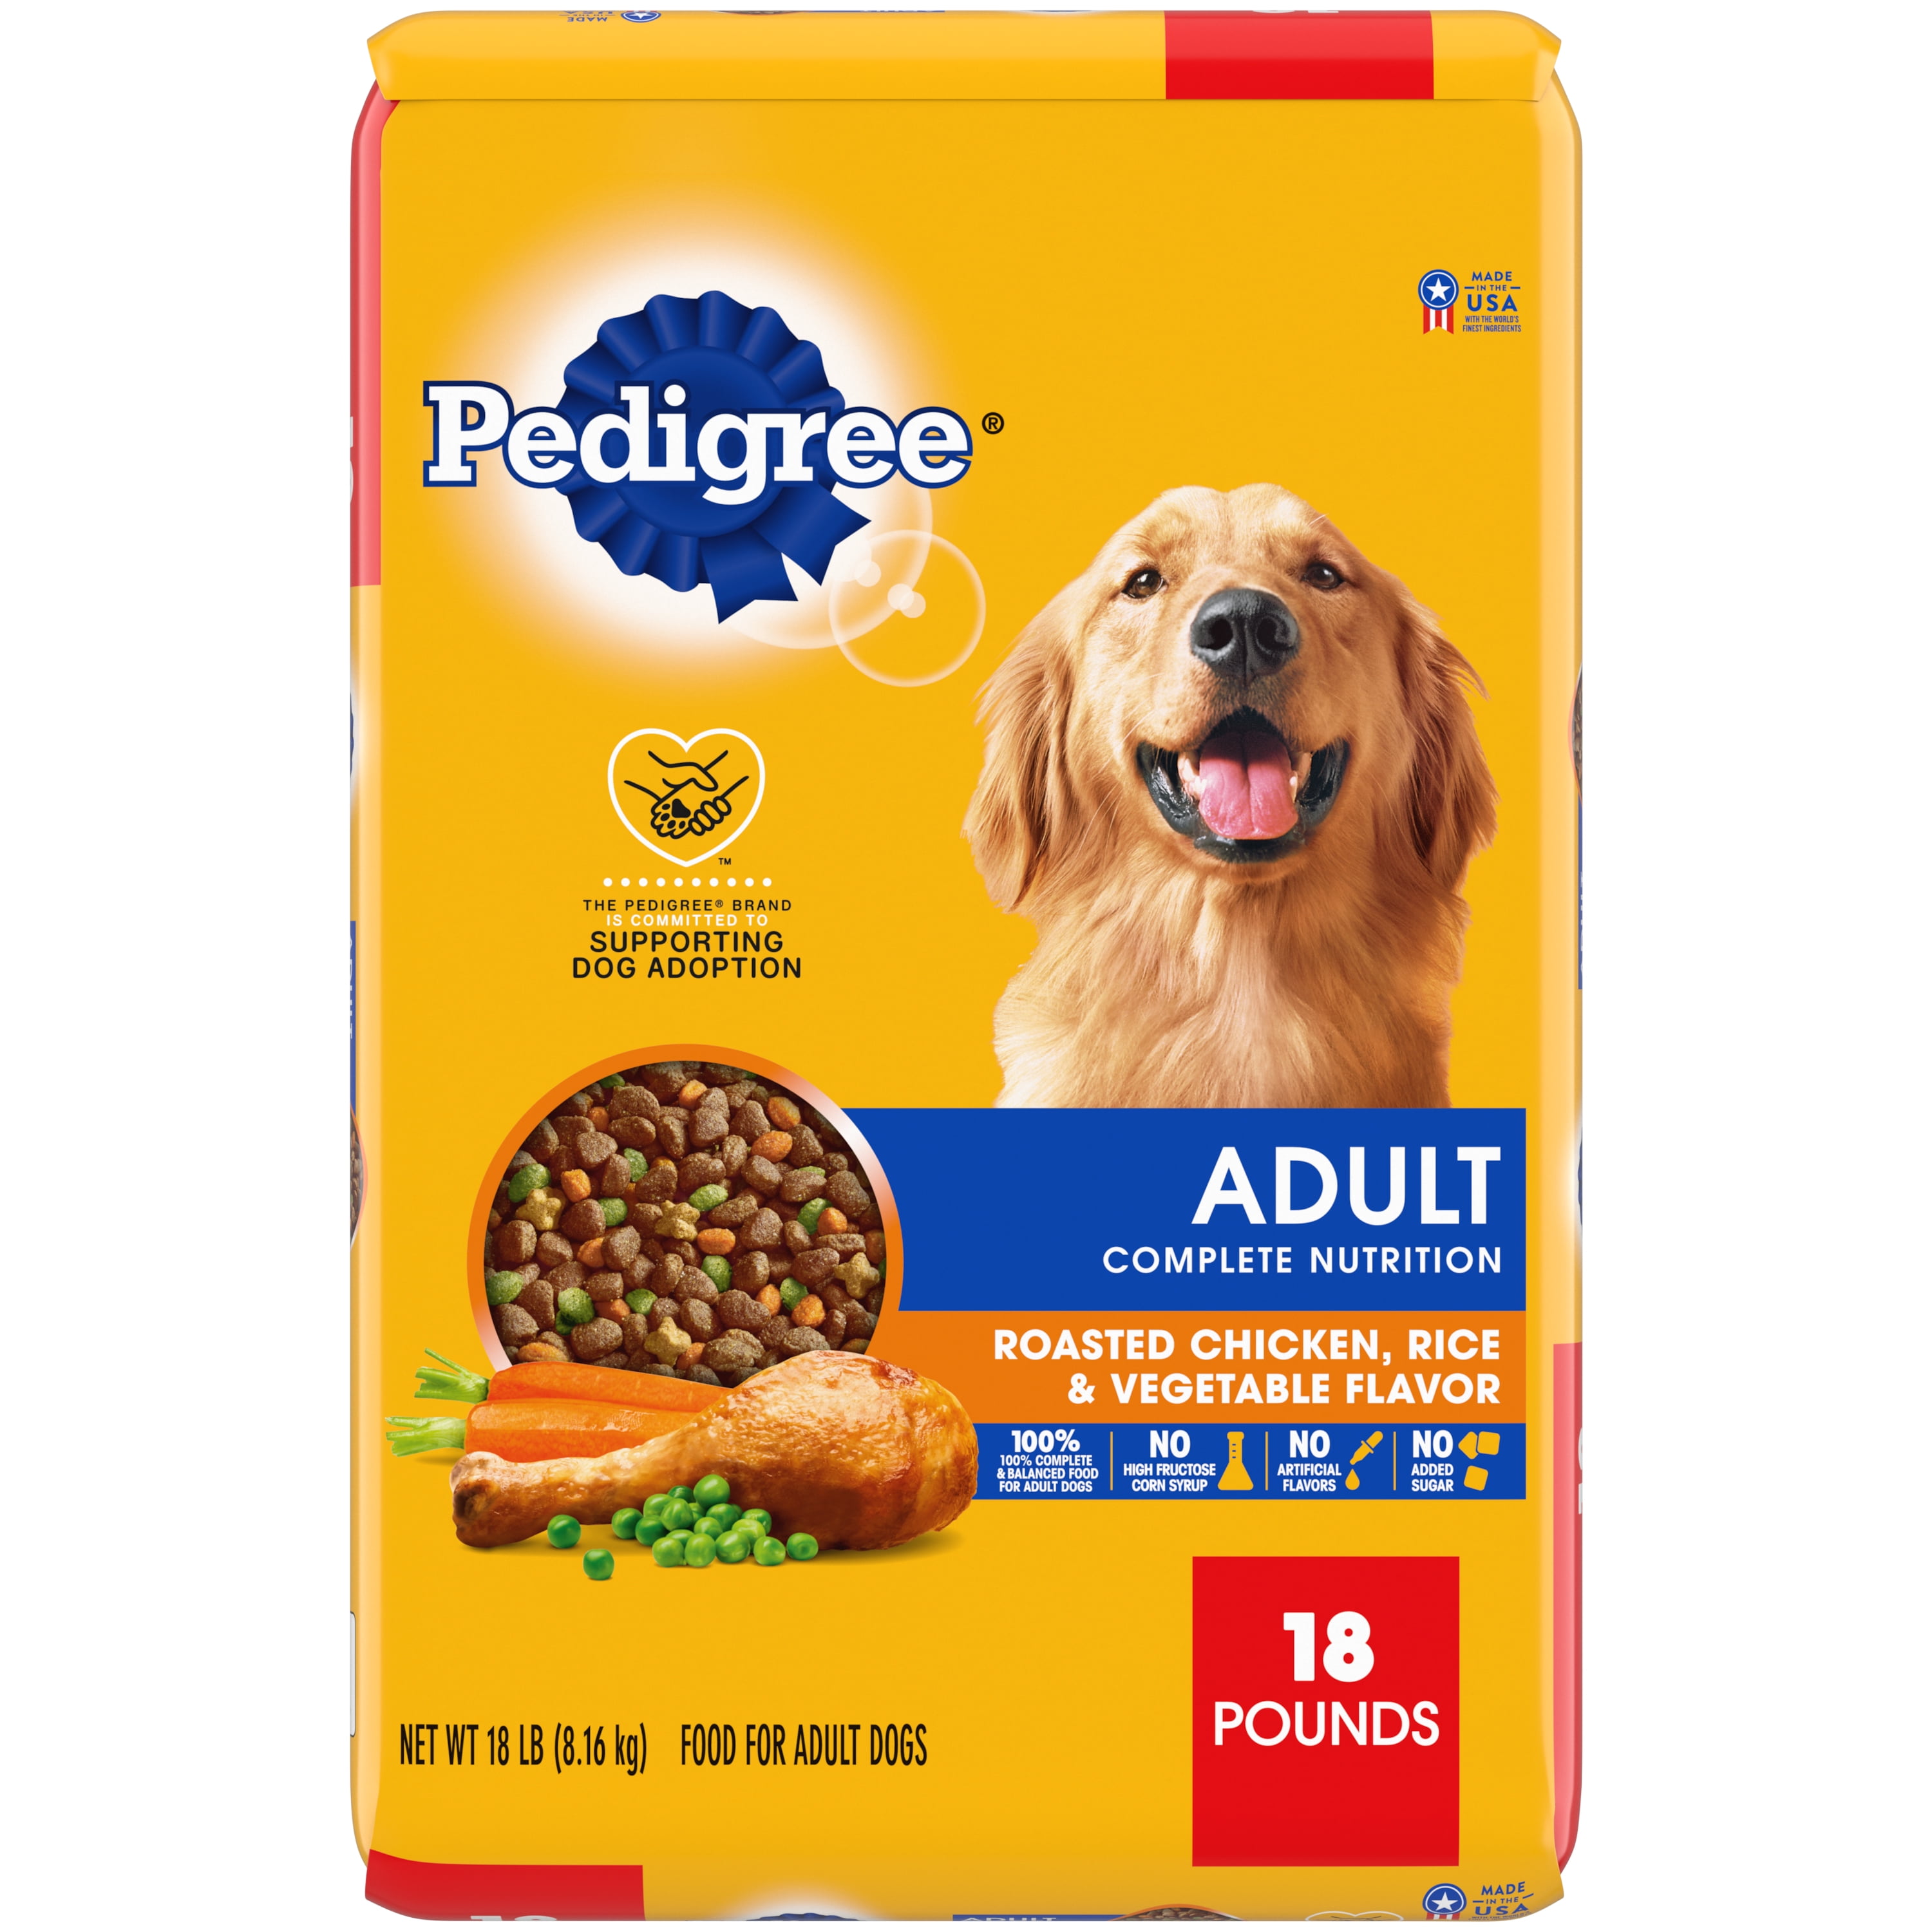 Pedigree Complete Nutrition Roasted Chicken, Rice & Vegetable Flavor Dry Dog Food for Adult Dog, 18 lb. Bag